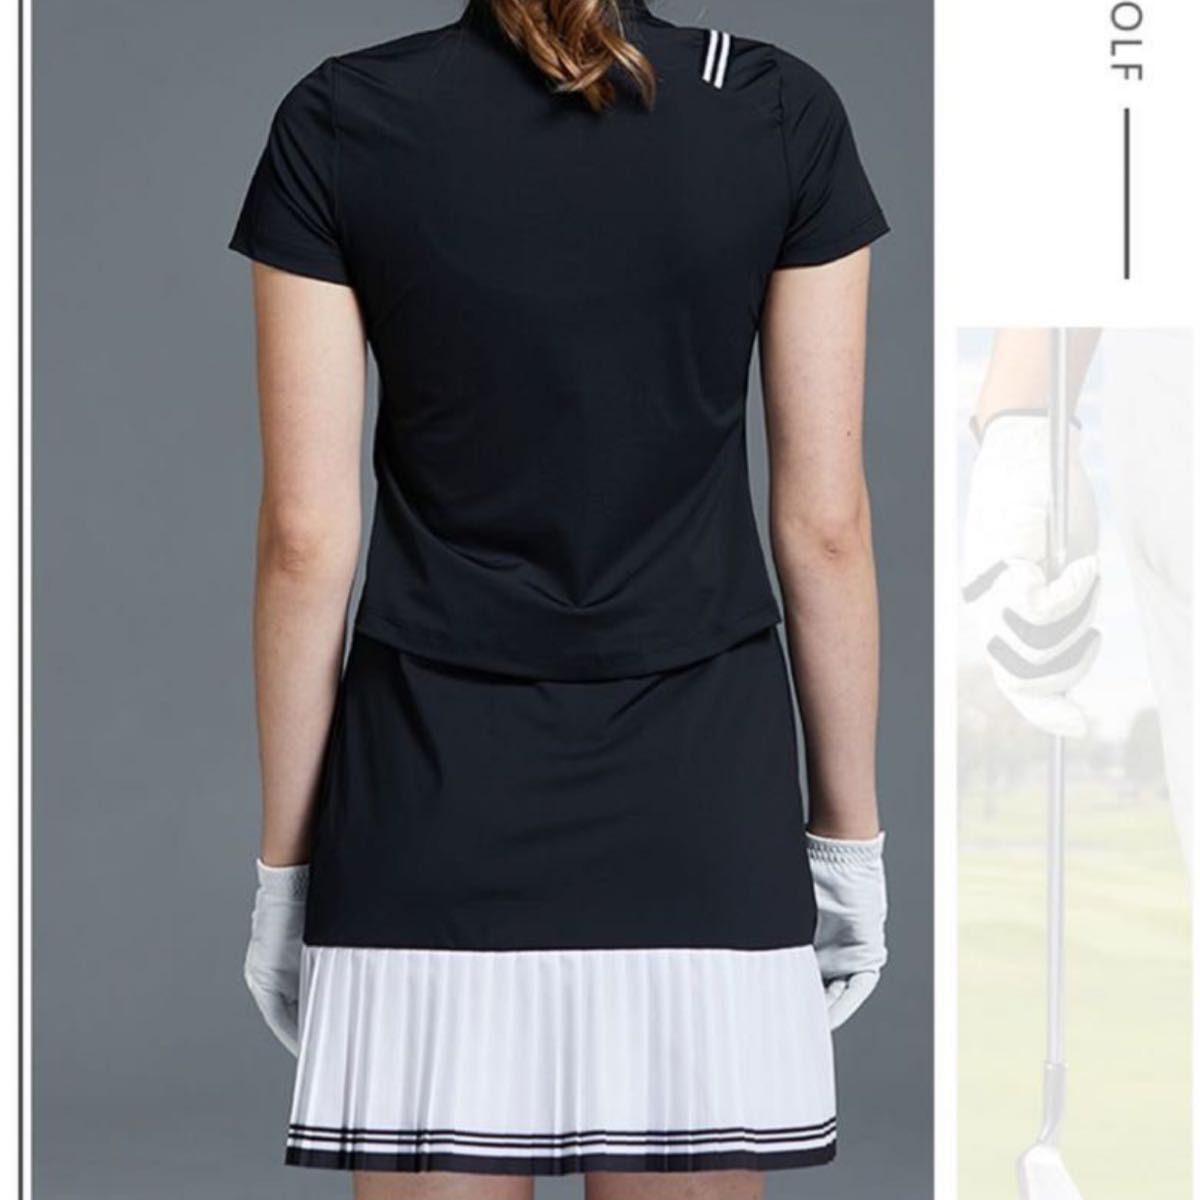 【タイムセール】大人っぽい♪ゴルフウェア レディース スポーツウェア ワンピース 半袖 ポロ モノトーン白黒 プリーツスカート